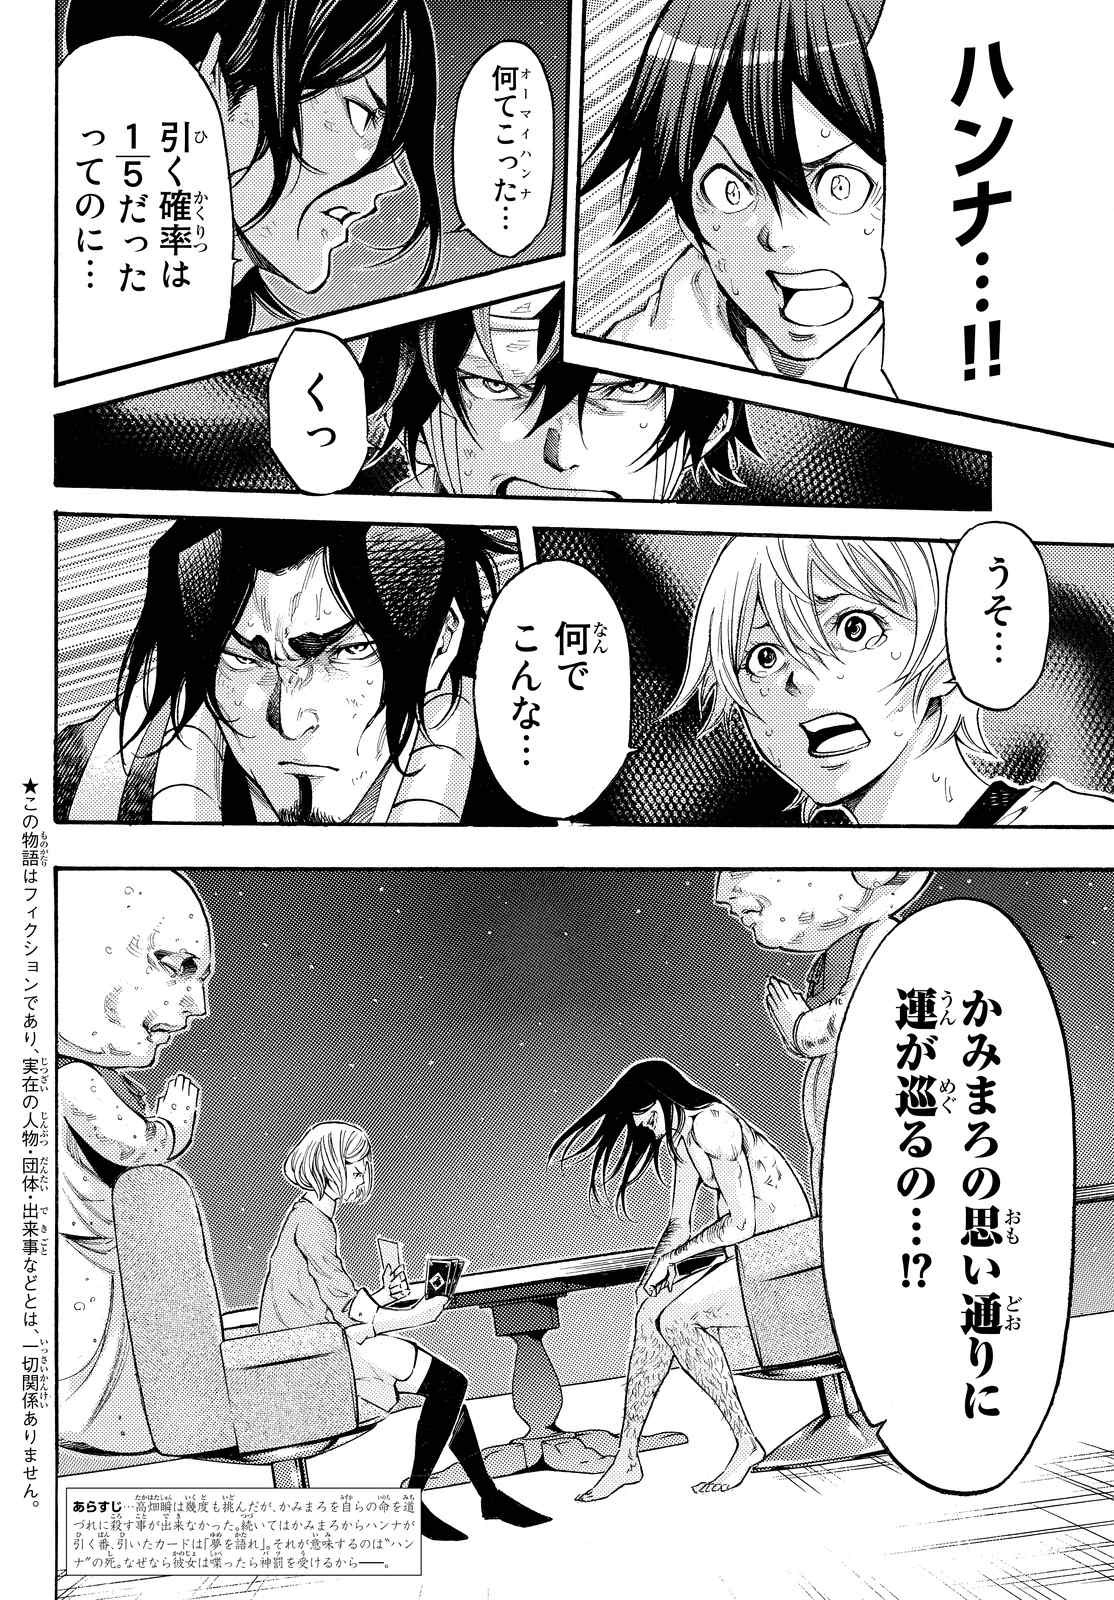 Kamisama_no_Ituori - Chapter 171 - Page 2